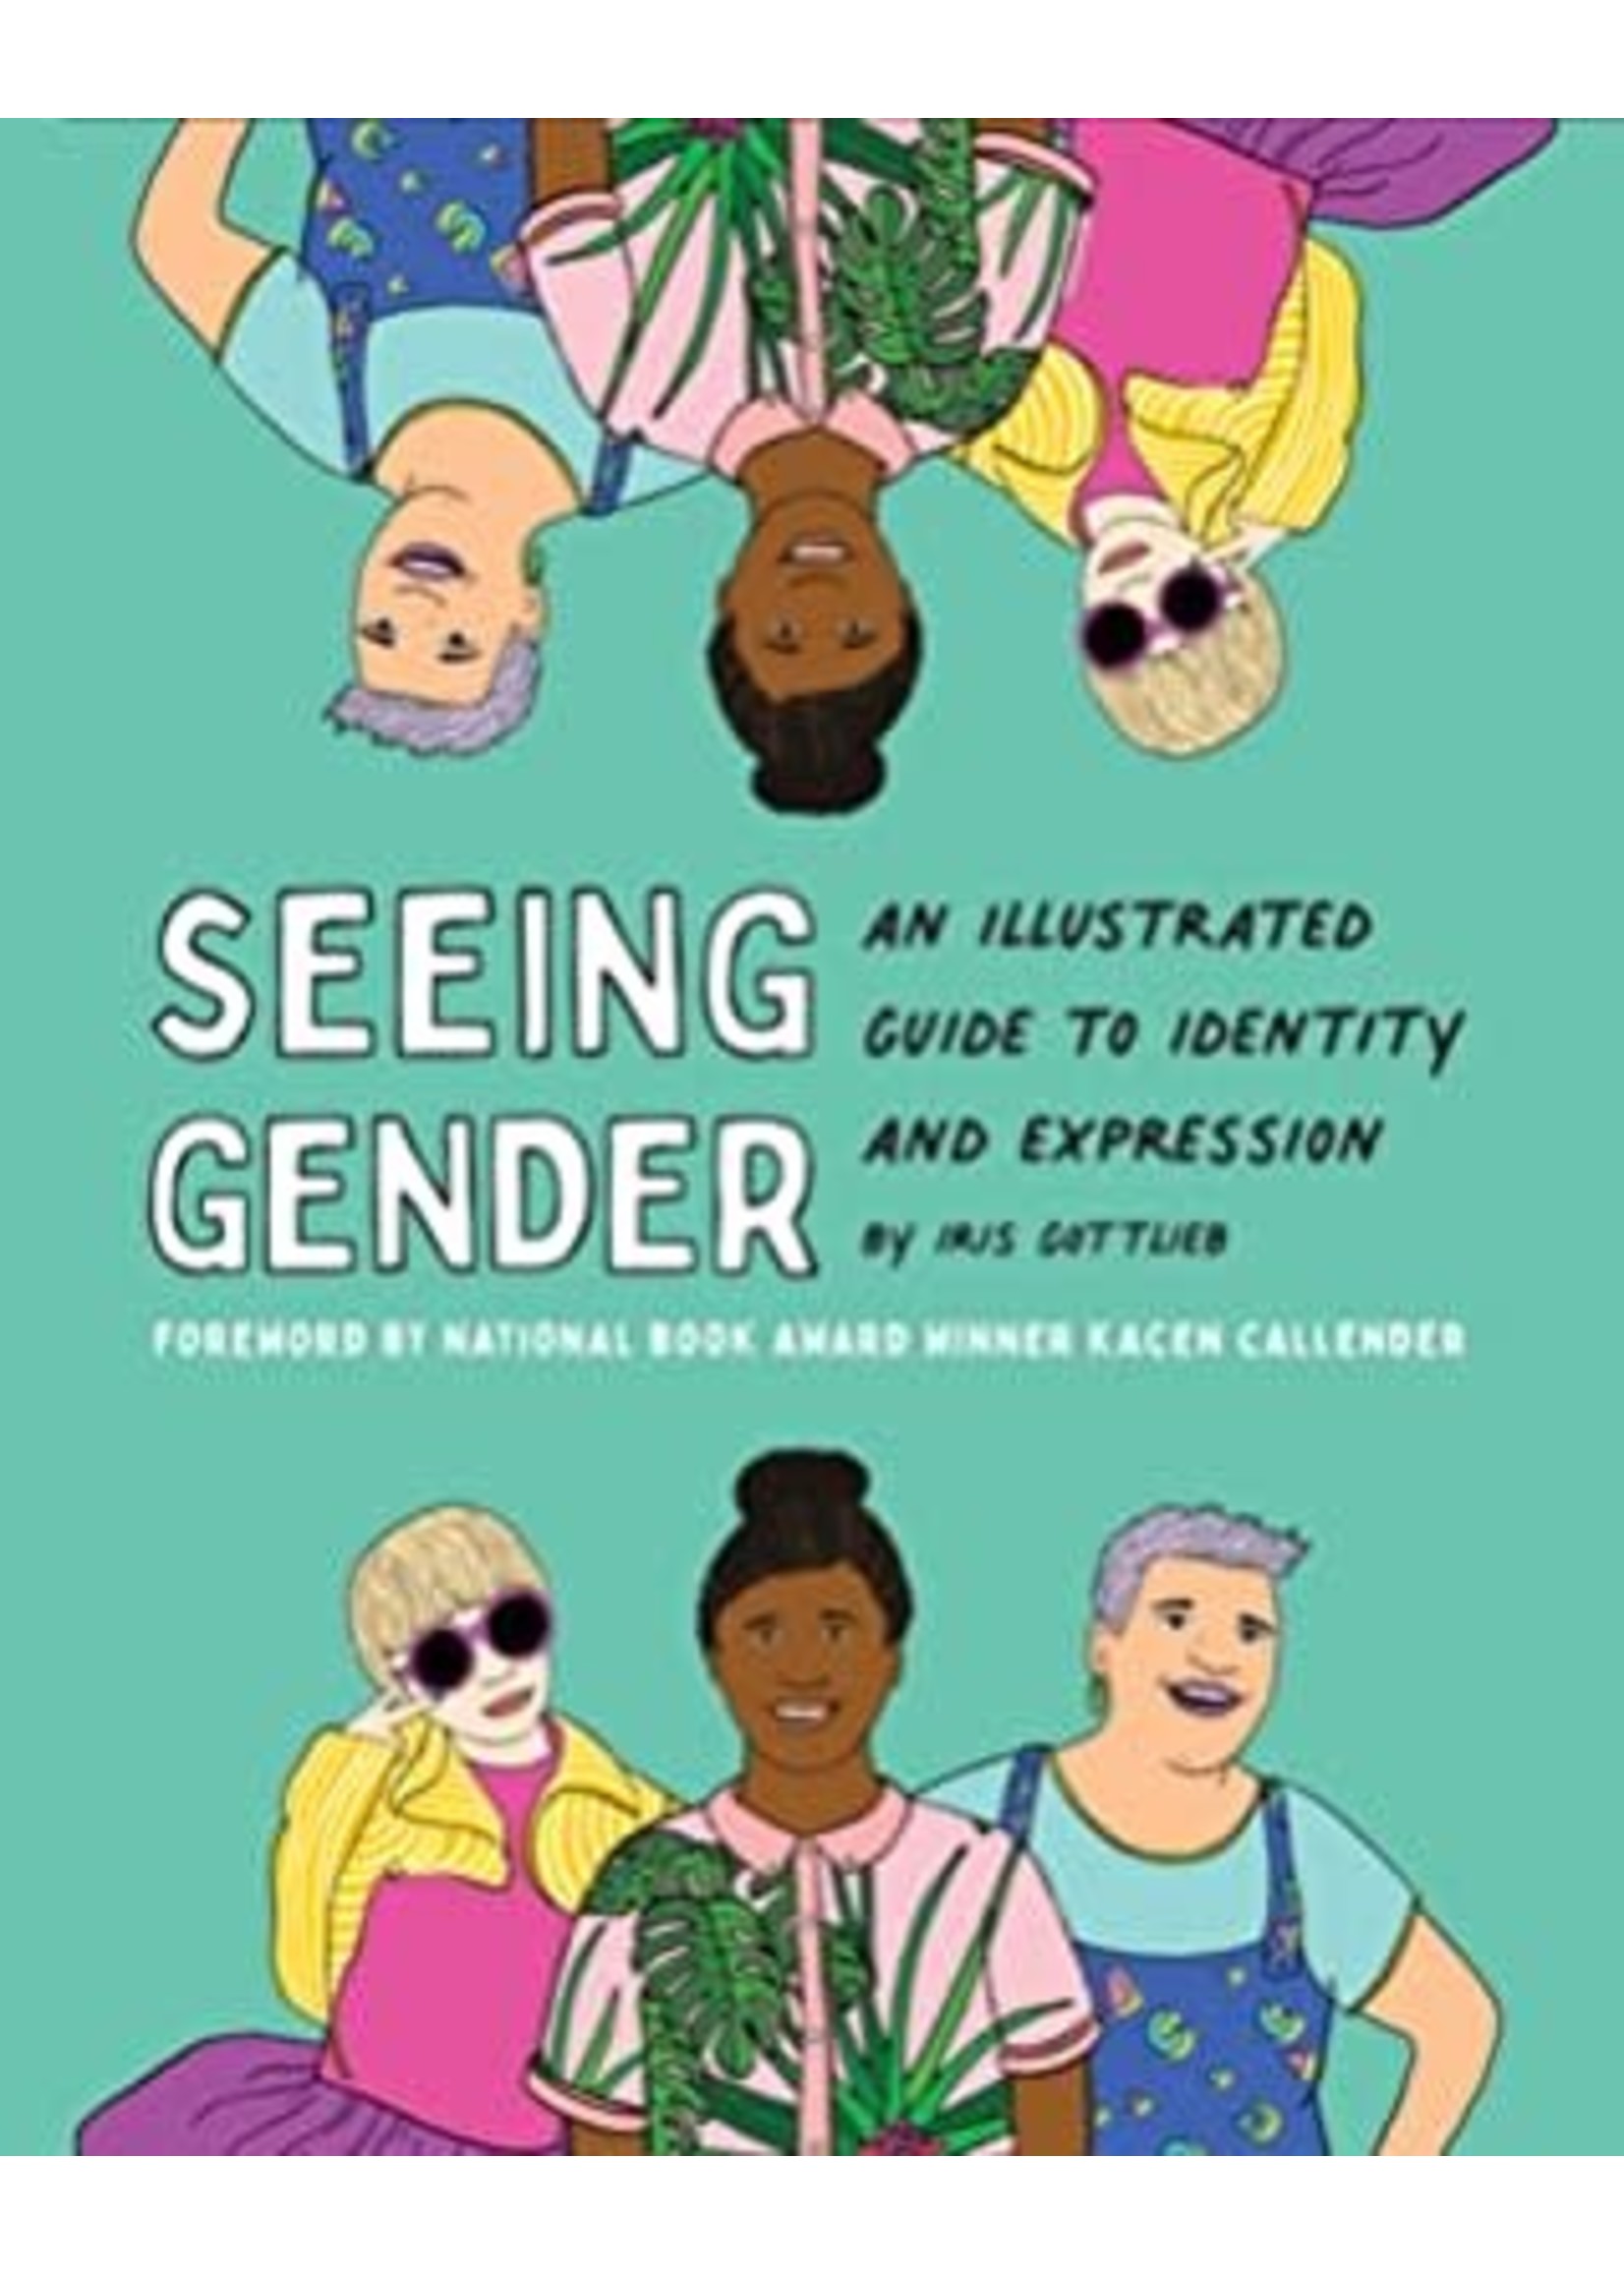 Seeing Gender by Iris Gottlieb